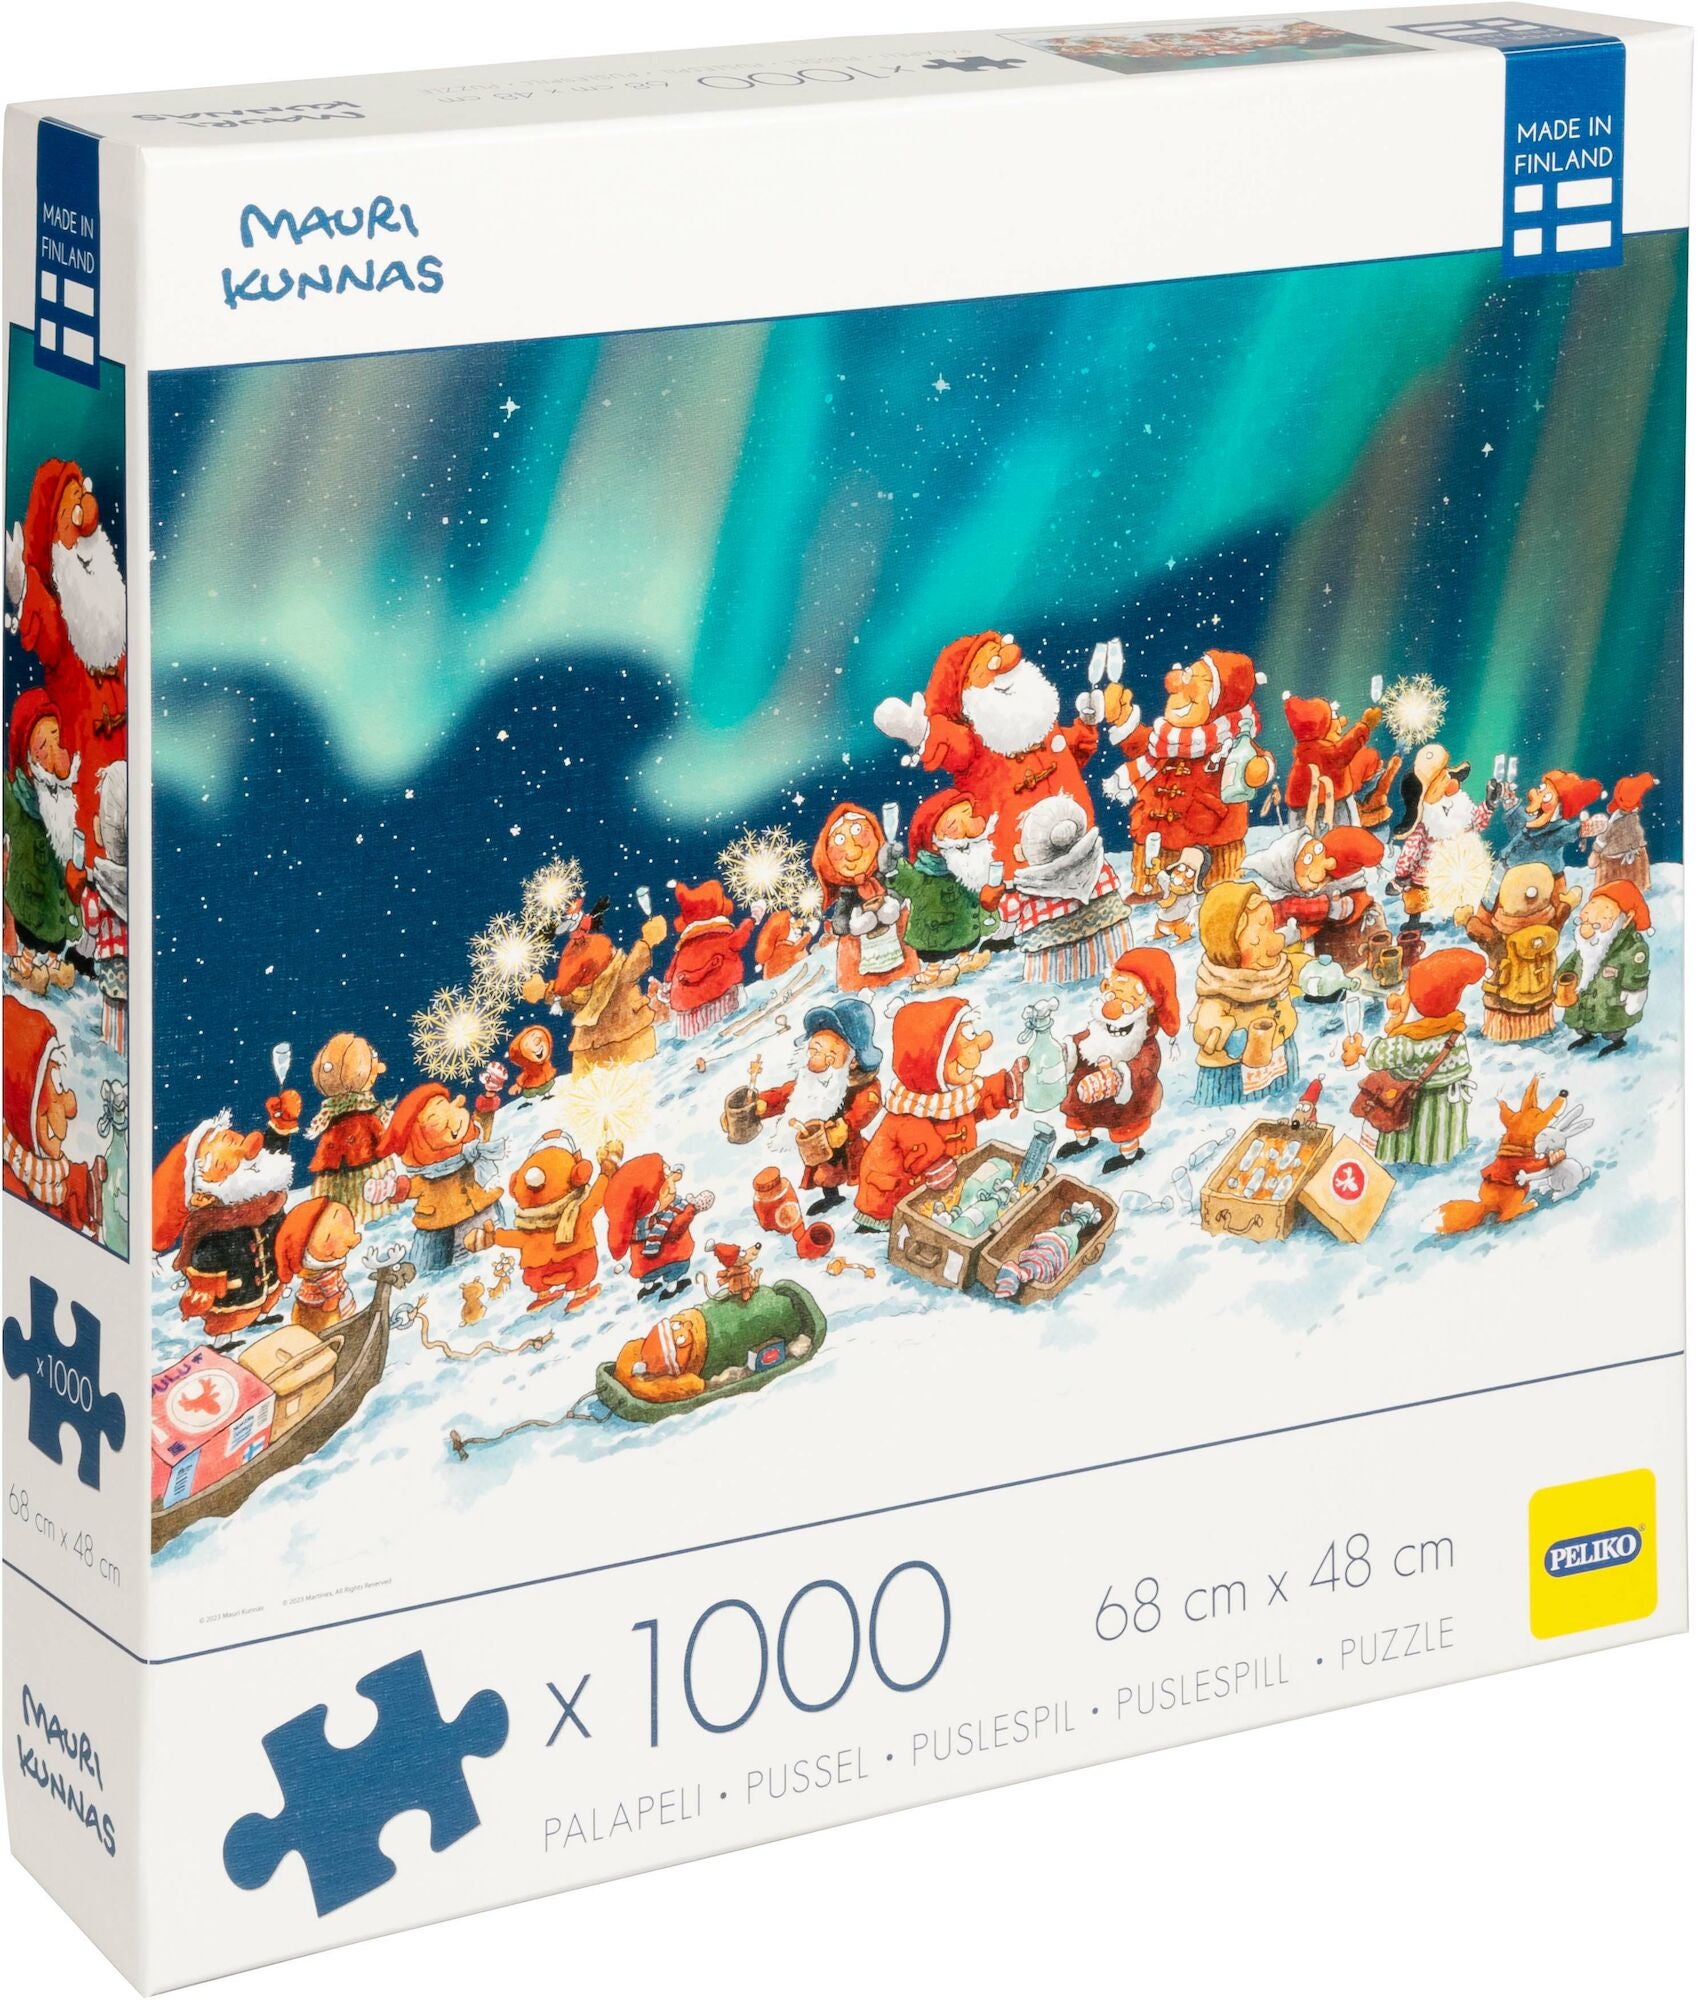 Peliko Mauri Kunnas Weihnachtspuzzle 1000 Teile von Peliko